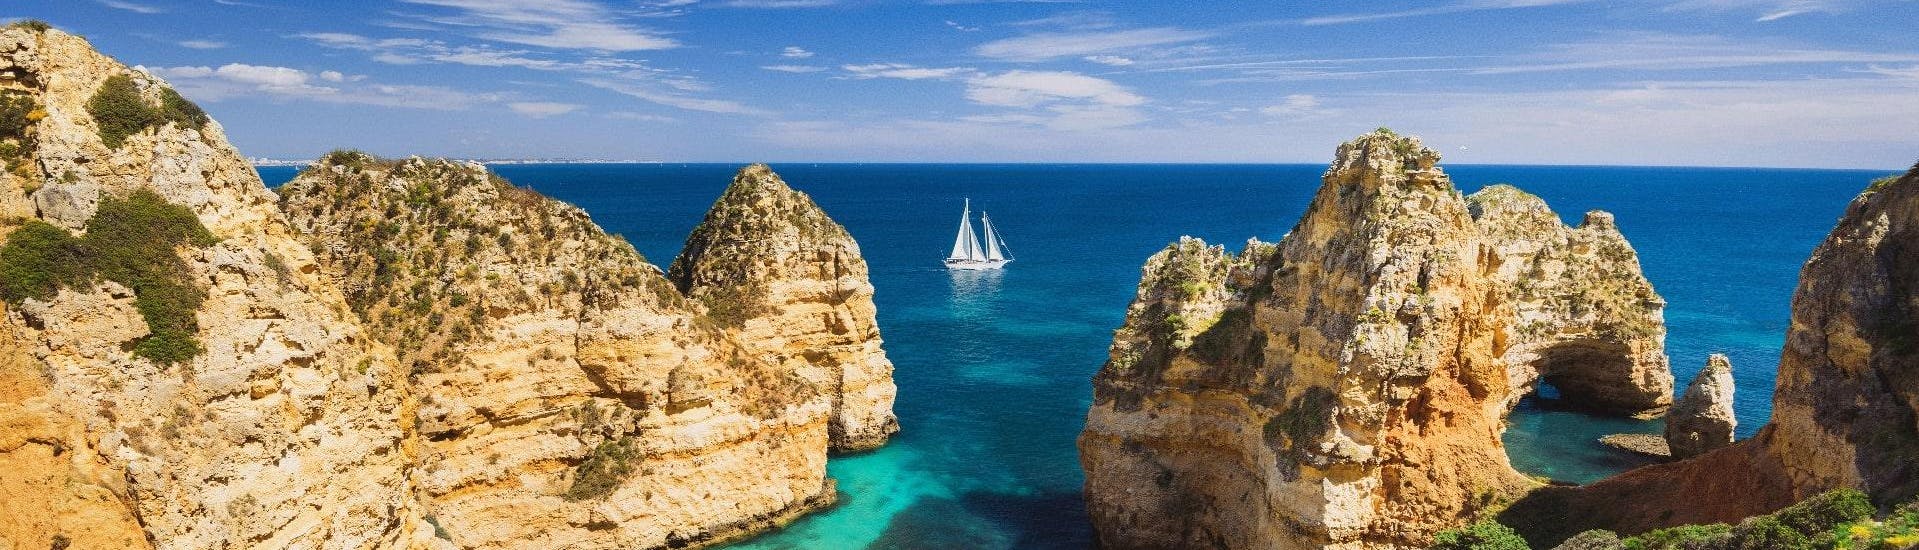 Ein Bild der atemberaubenden Felsformationen entlang der Algarve, die man bei einer Bootstour von Portimão bestaunen kann.